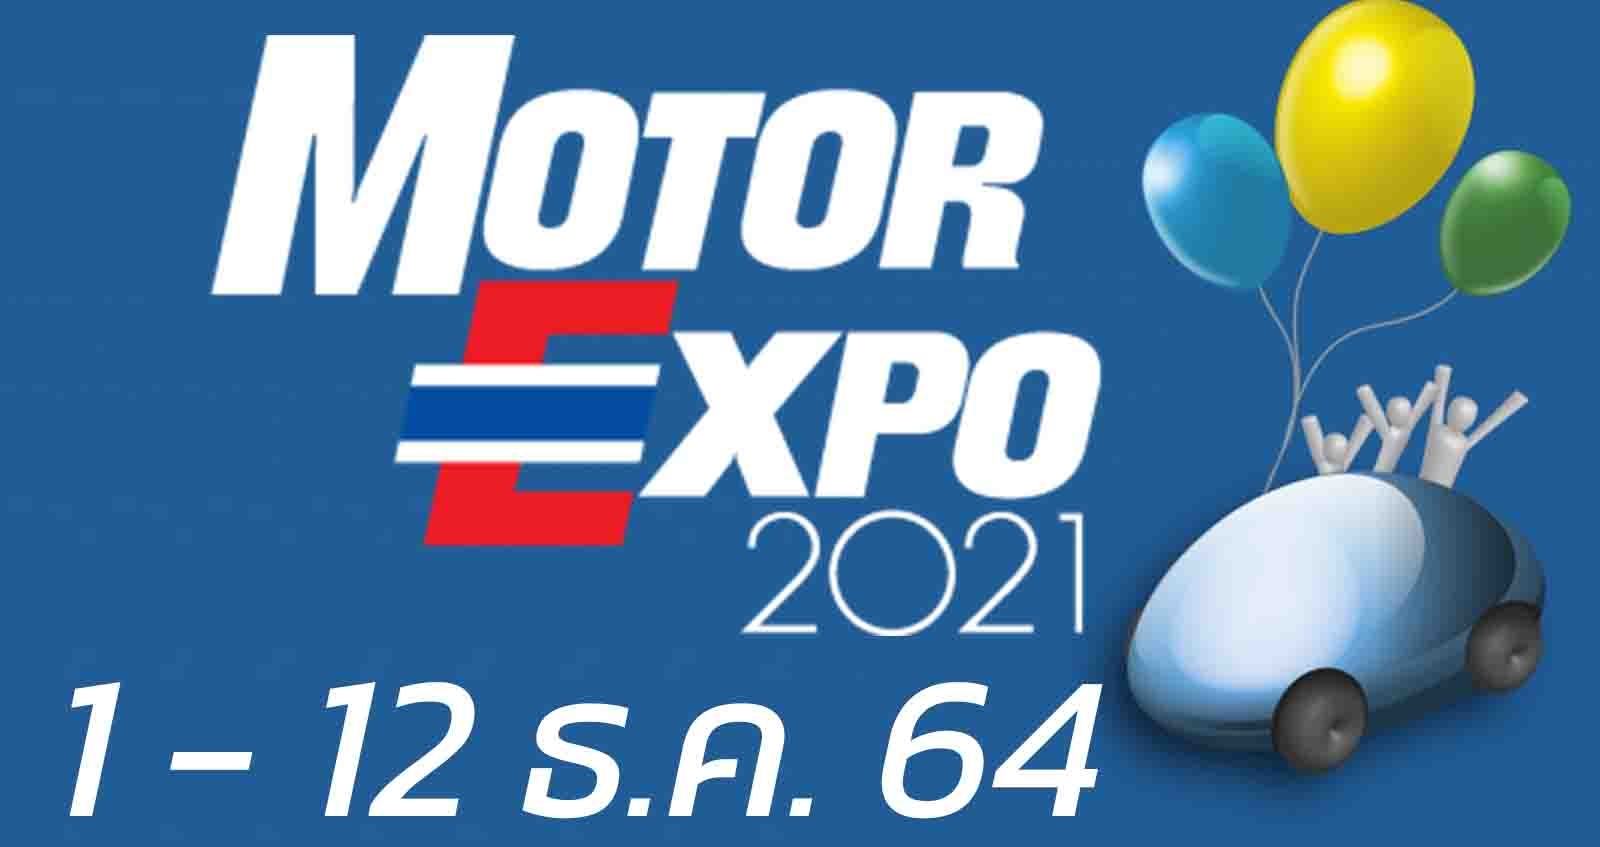 Motor Expo 2021 ระหว่าง 1 – 12 ธันวคาม 2021 มหกรรมรถยนต์ท้ายปี สุดยิ่งใหญ่